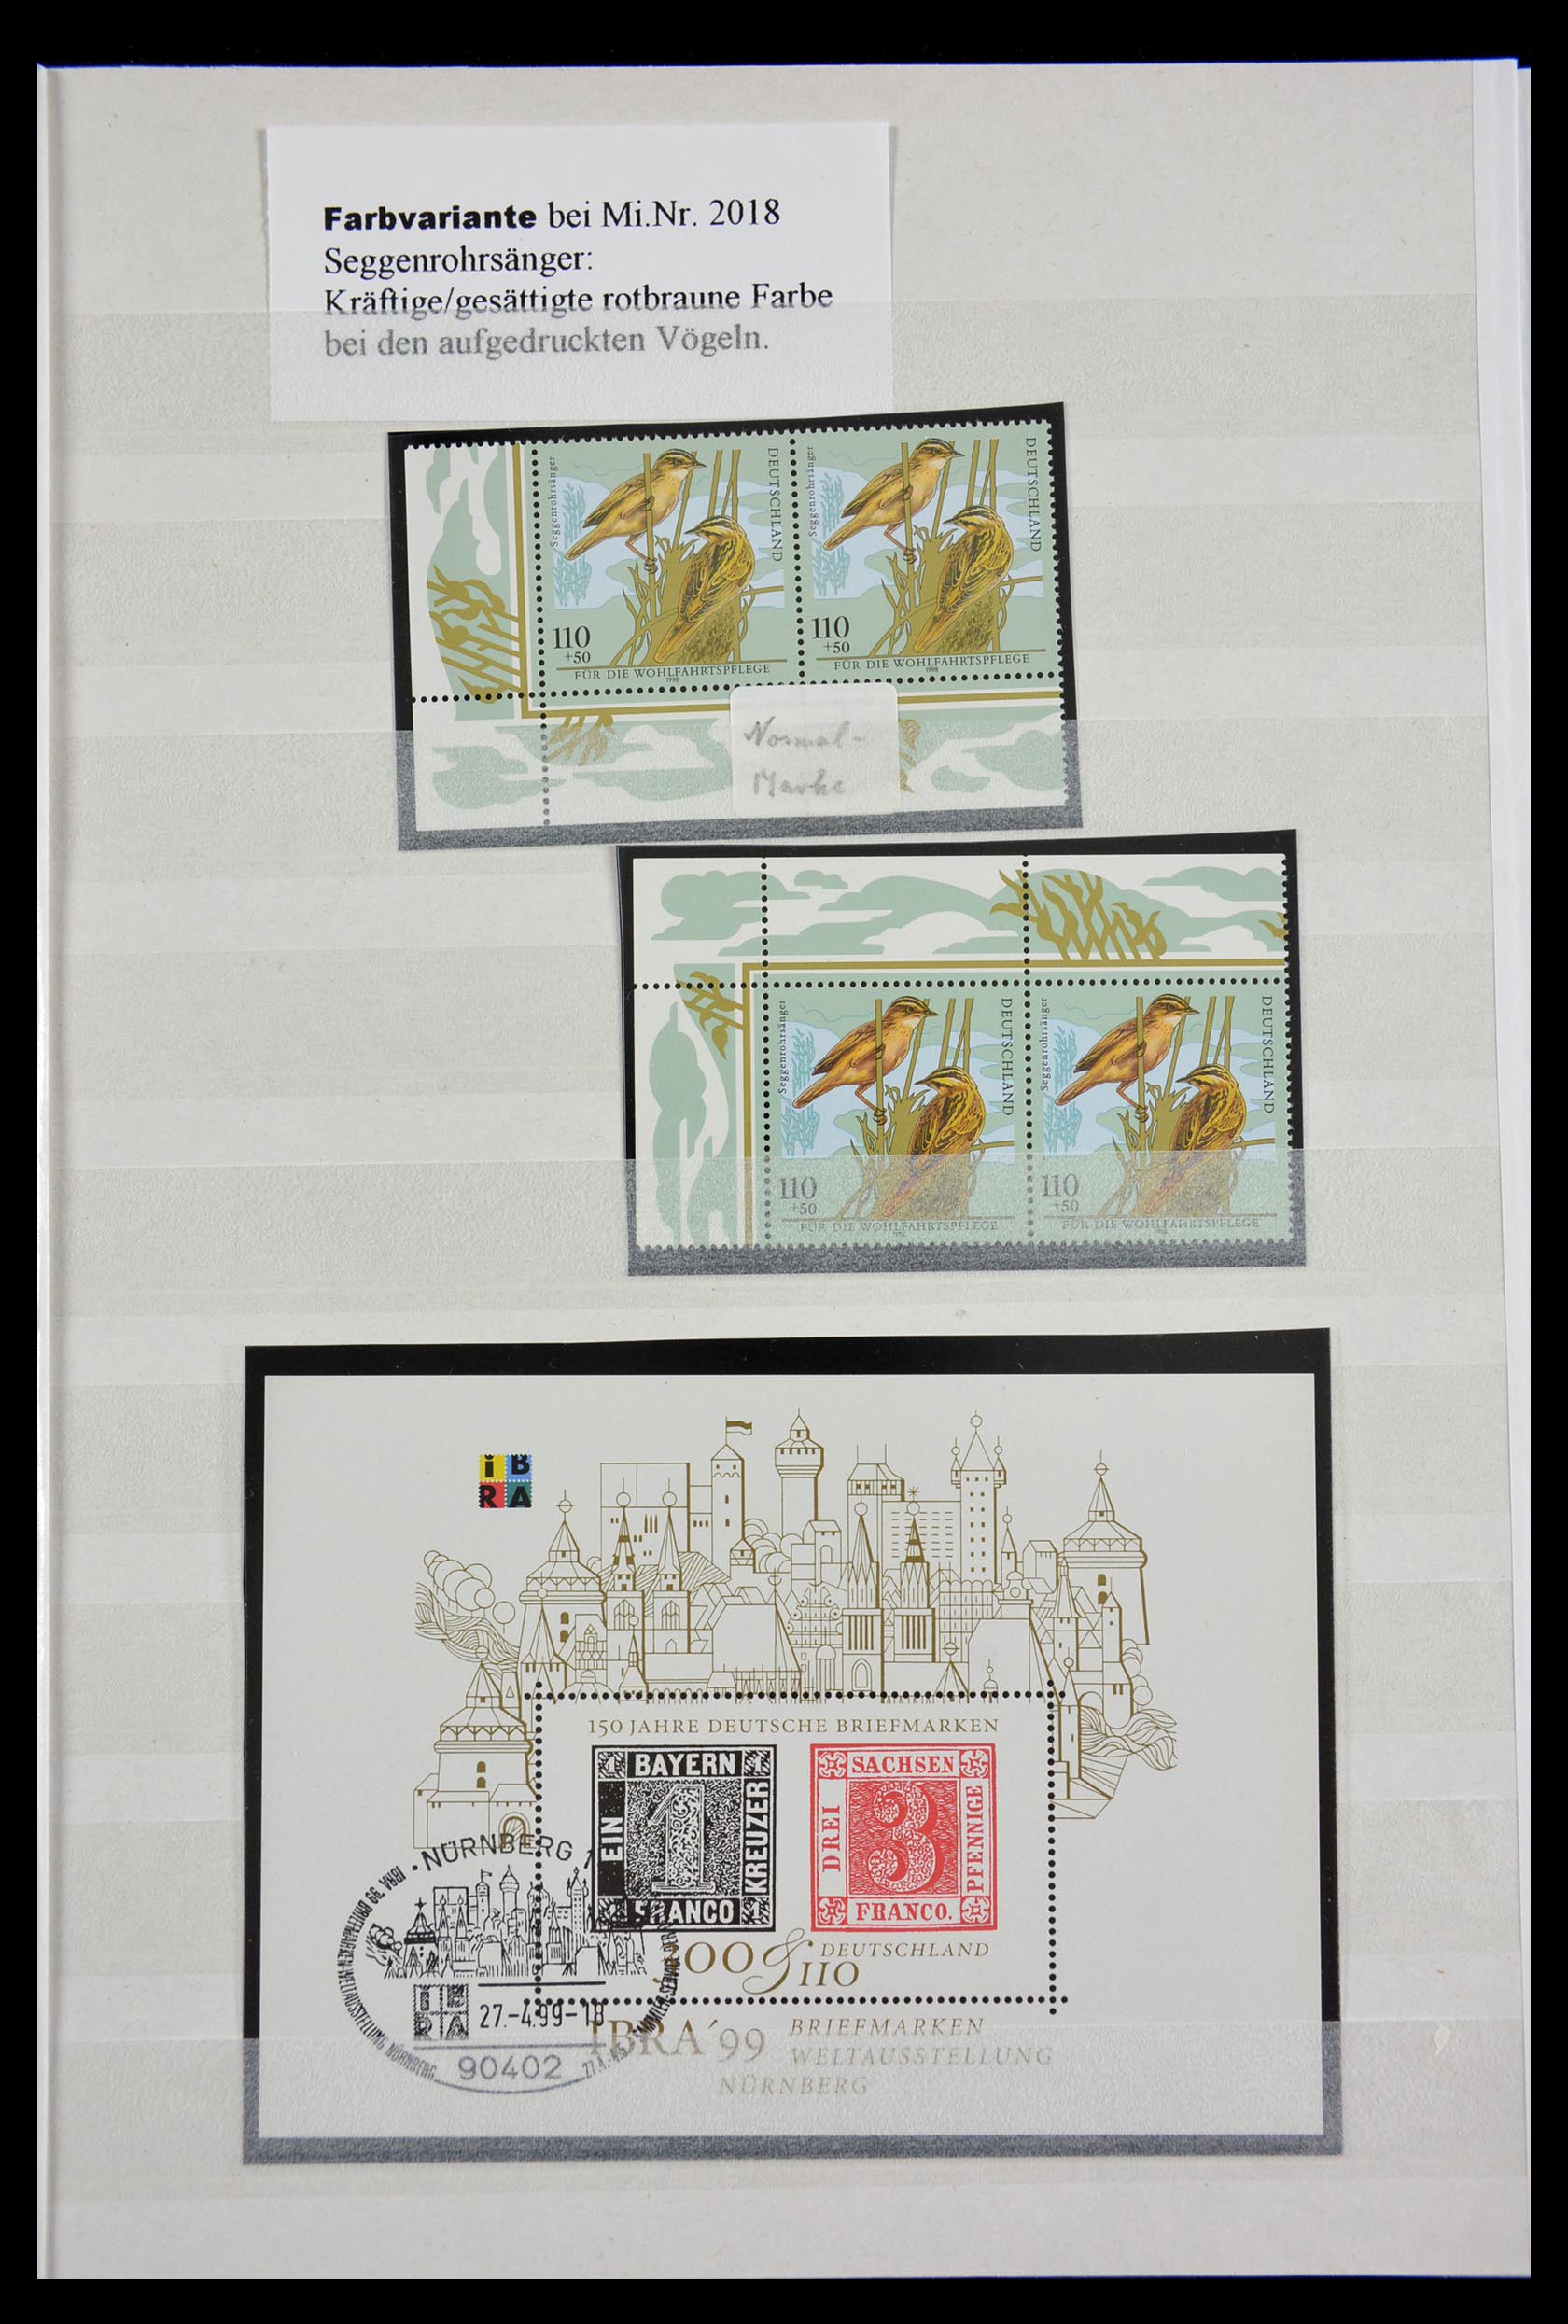 29491 033 - 29491 Bundespost plateflaws 1957-1994.